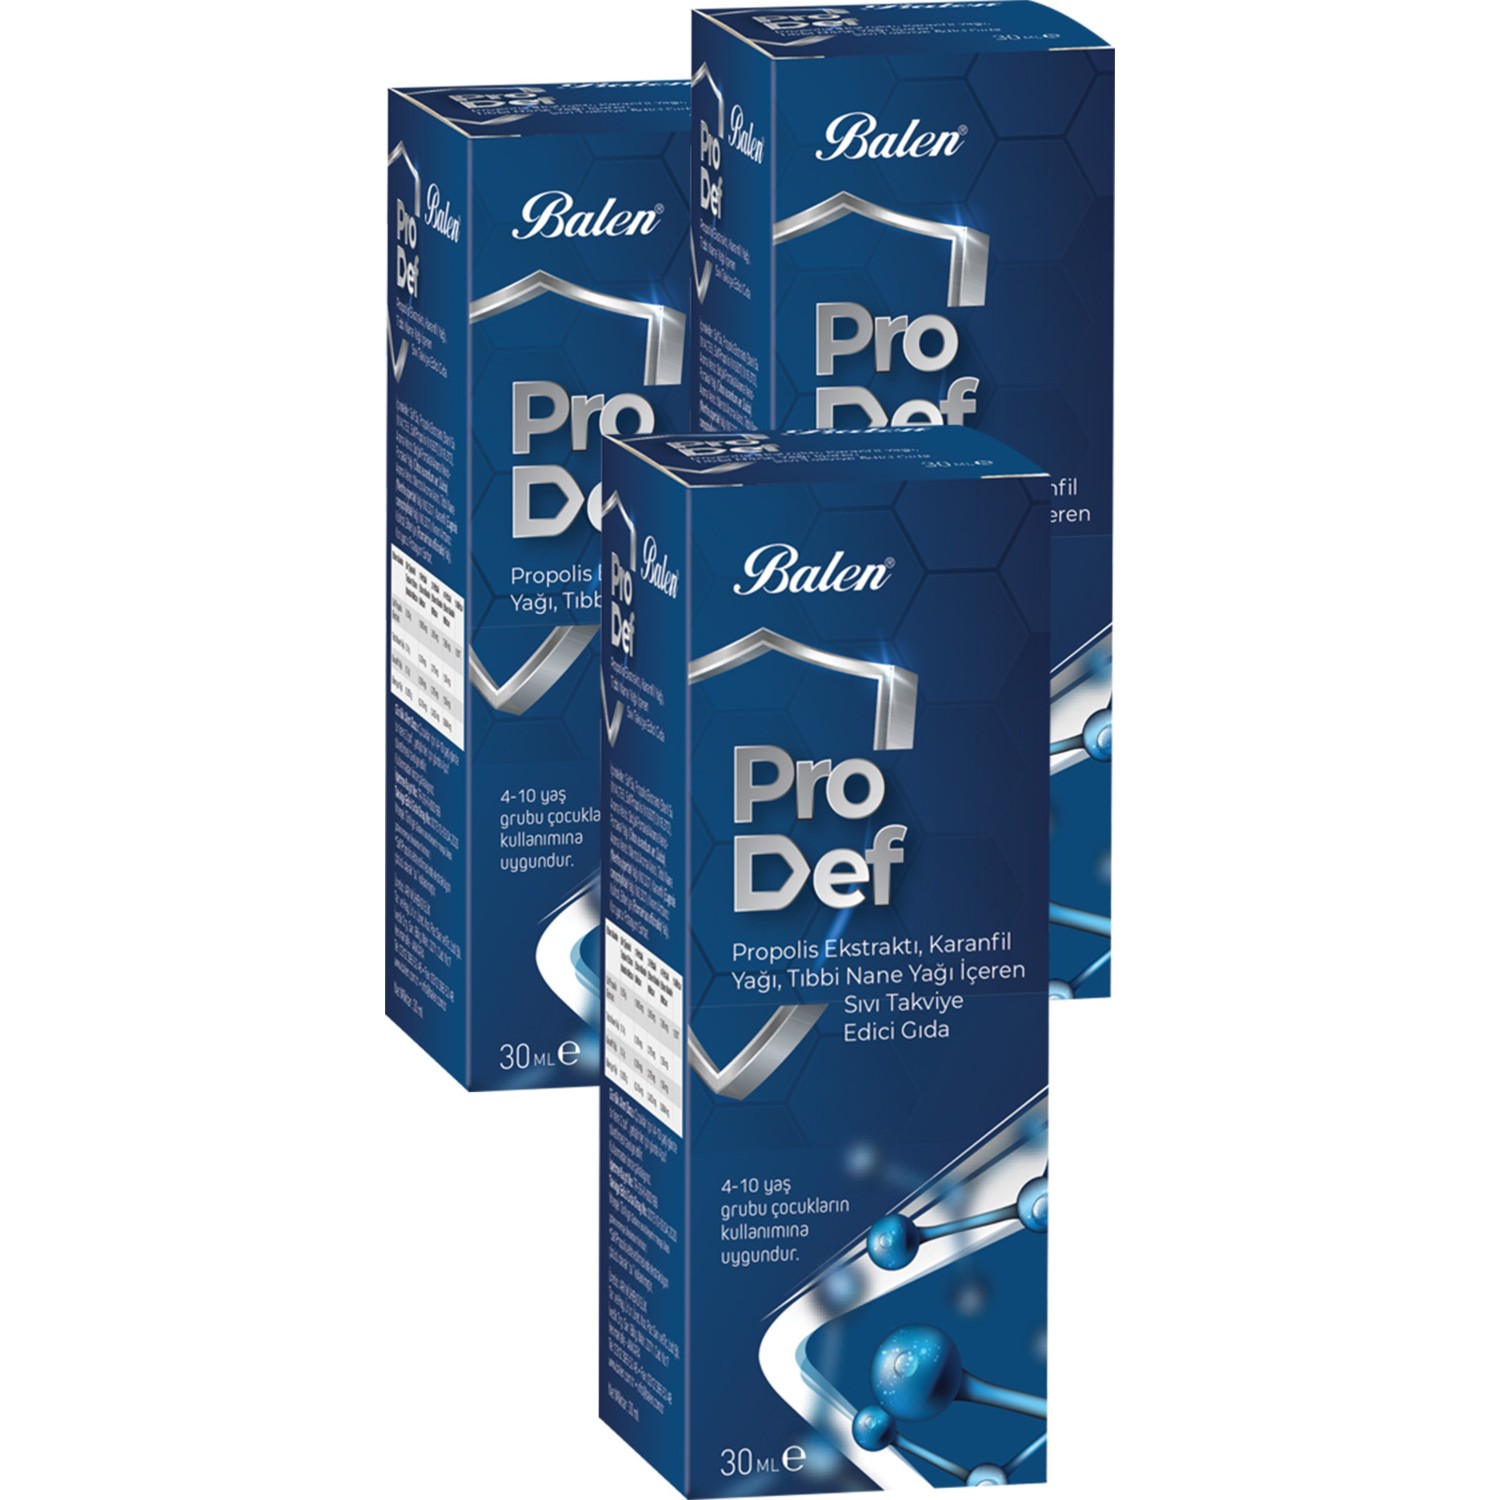 Спрей для горла с экстрактом прополиса Balen Pro Def Spray Supplement, 3 упаковки по 30 мл спрей для горла balen prodef 30 мл